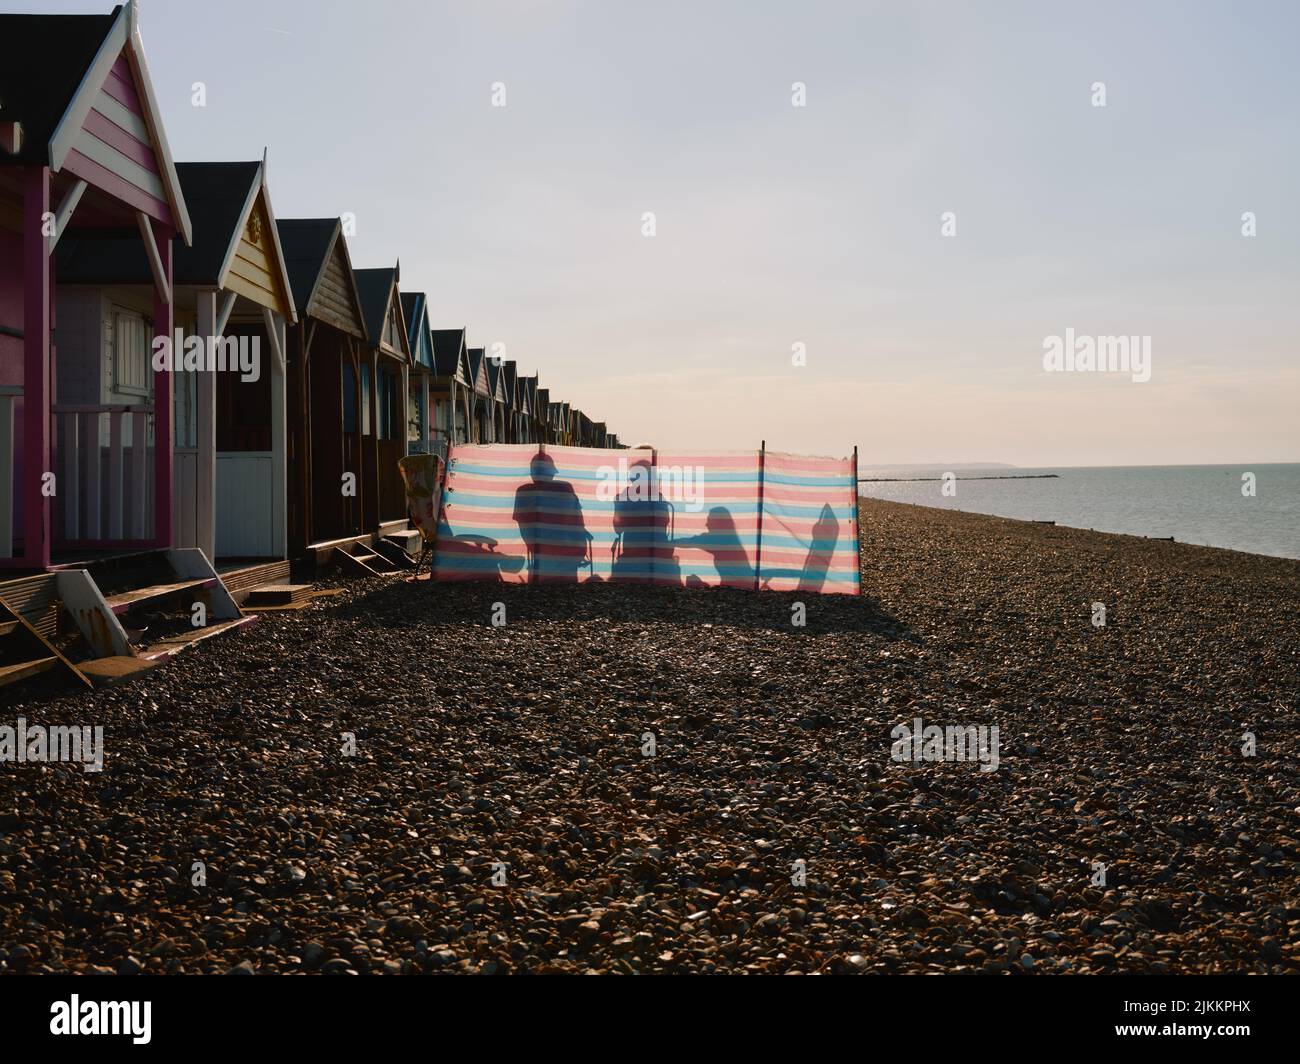 Plage d'été, cabanes de plage, coupe-vent et famille le jour d'été sur la plage de galets de Herne Bay, côte nord du Kent, Angleterre, Royaume-Uni - bord de mer de piété Banque D'Images